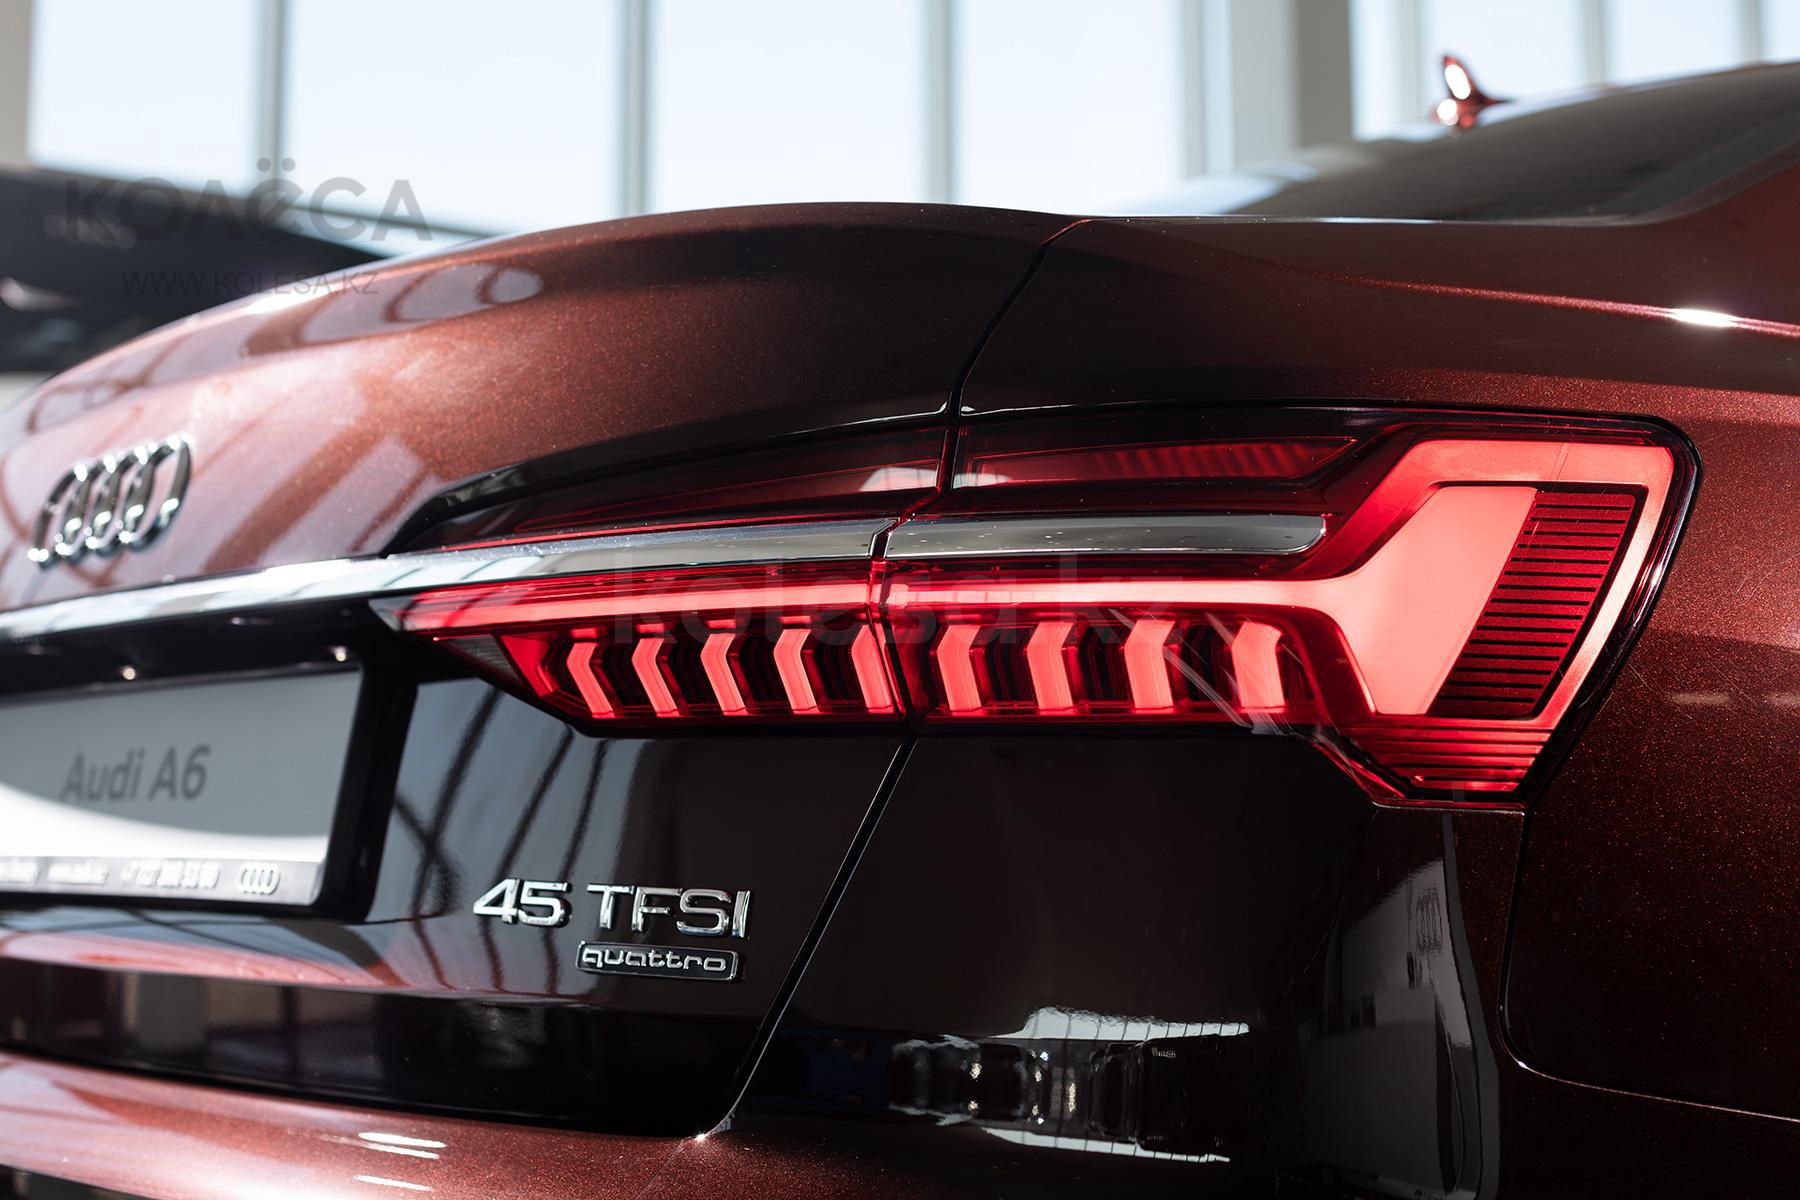 Audi A6 Е класса 2021 года от 28 000 000 тенге